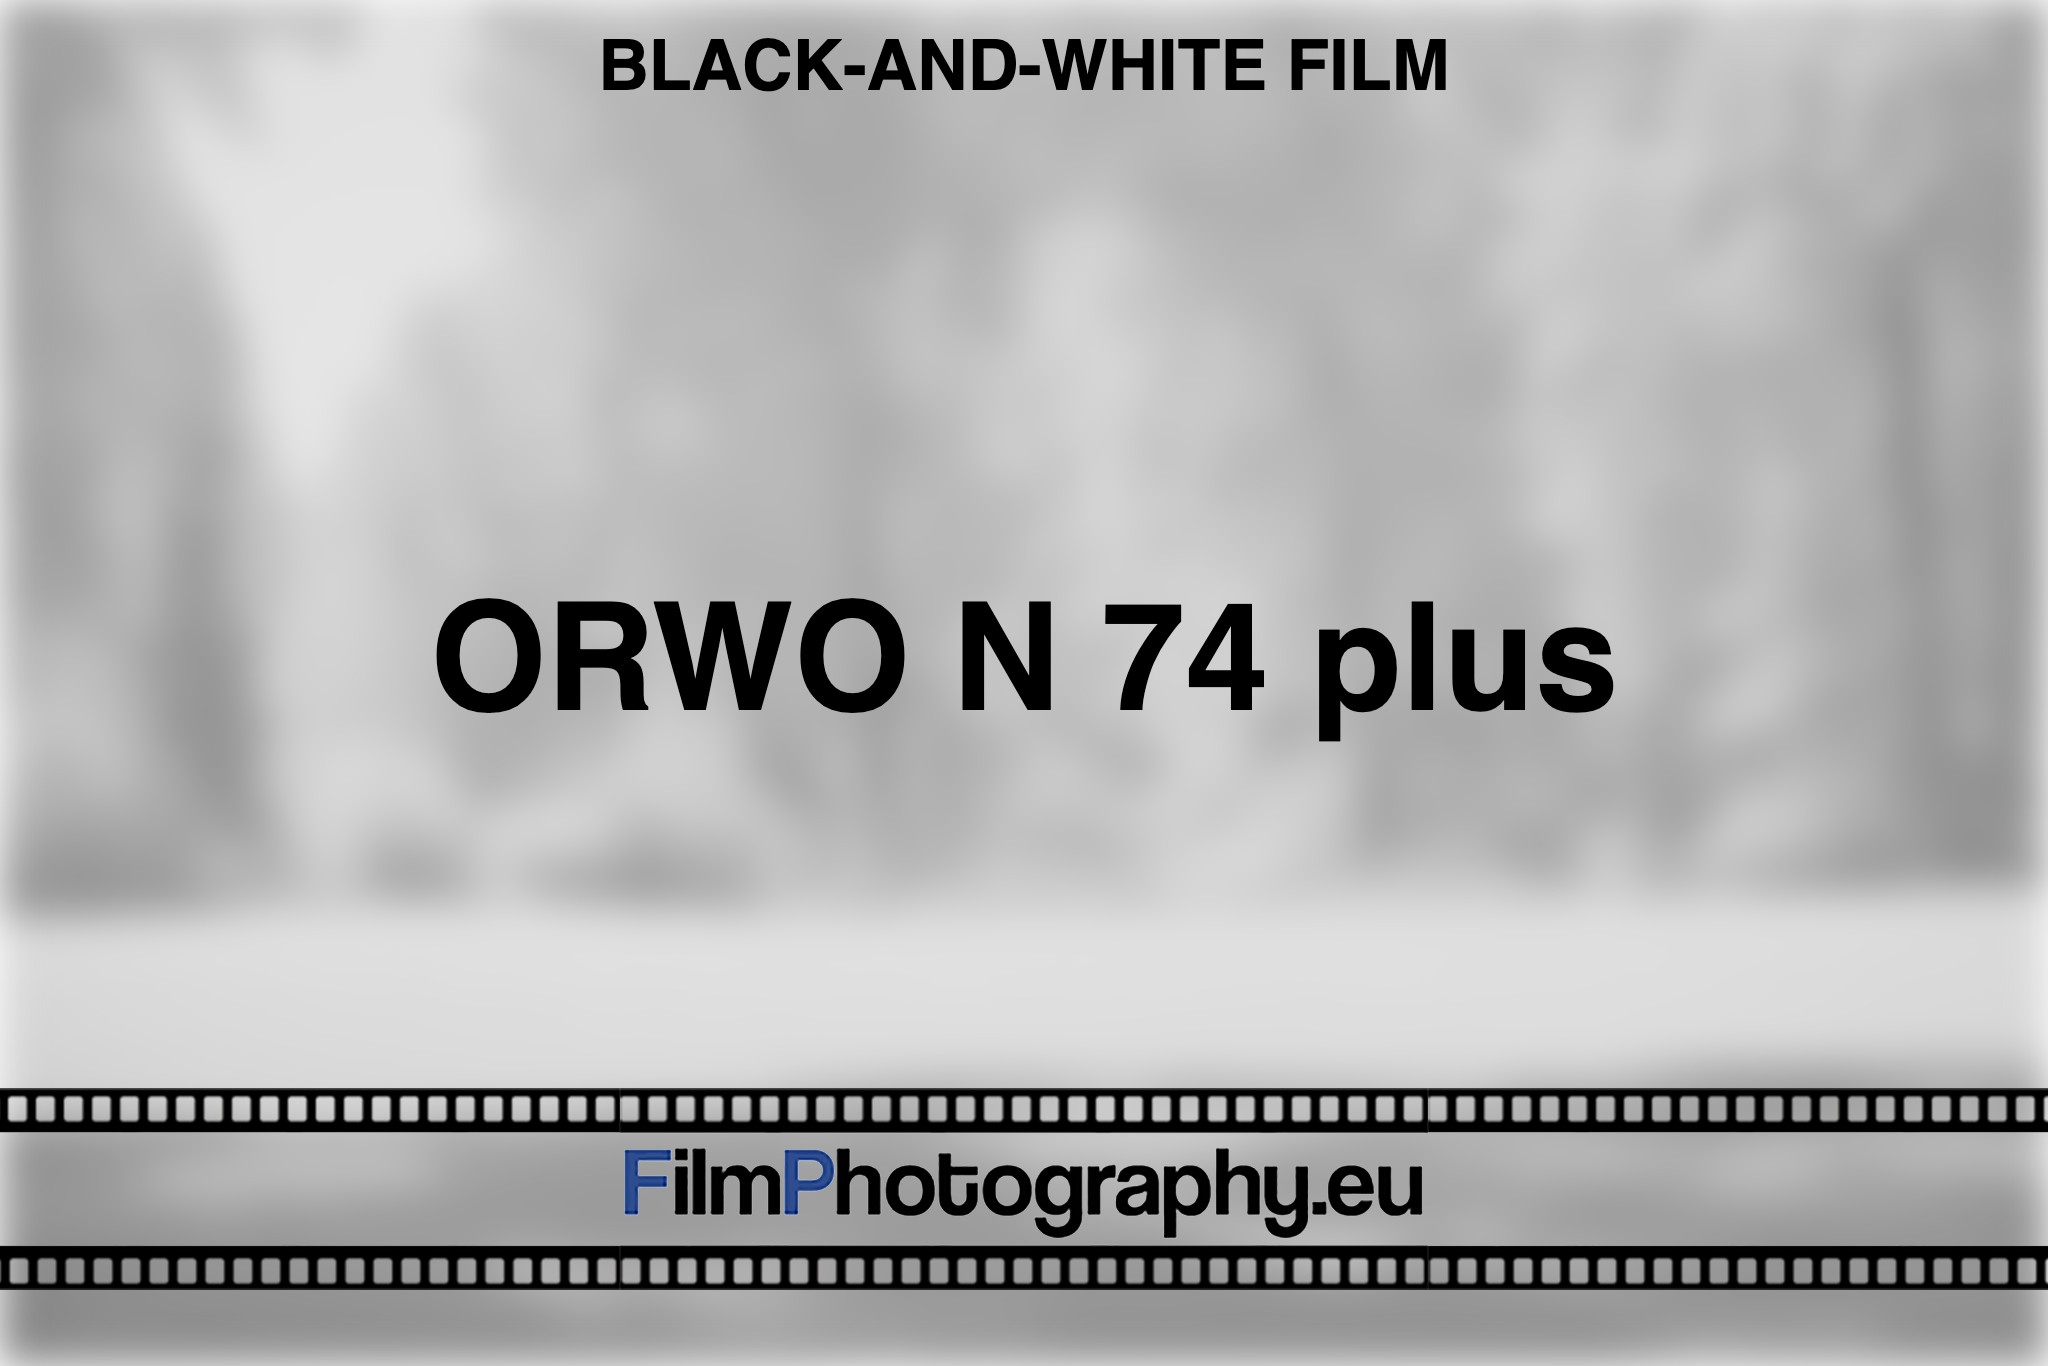 orwo-n-74-plus-black-and-white-film-bnv